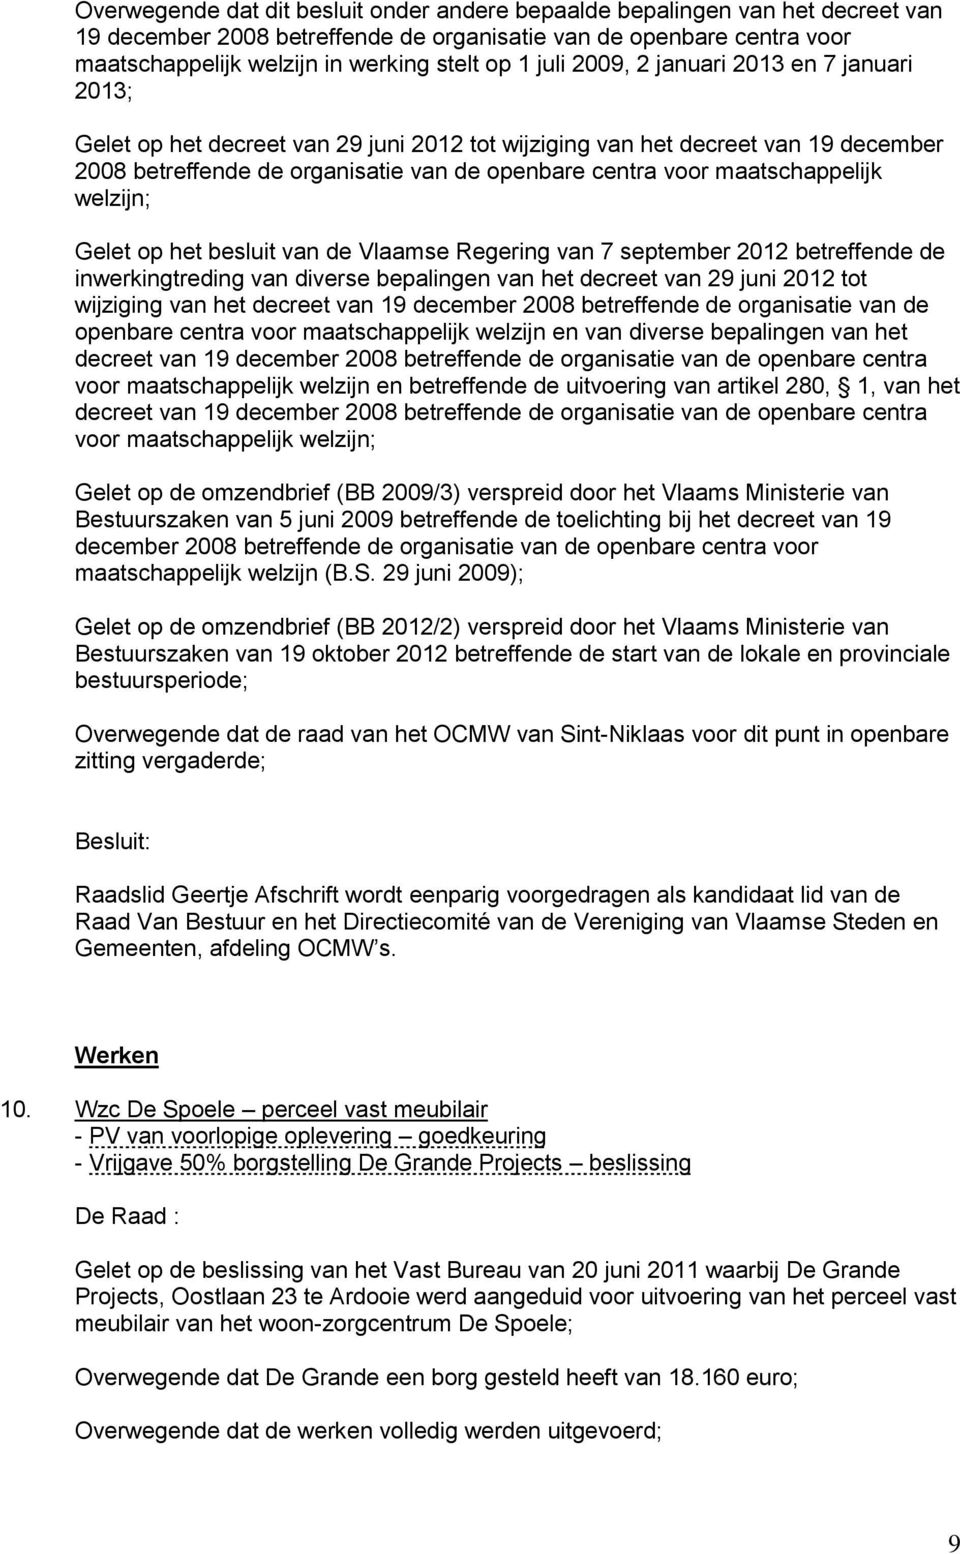 maatschappelijk welzijn; Gelet op het besluit van de Vlaamse Regering van 7 september 2012 betreffende de inwerkingtreding van diverse bepalingen van het decreet van 29 juni 2012 tot wijziging van